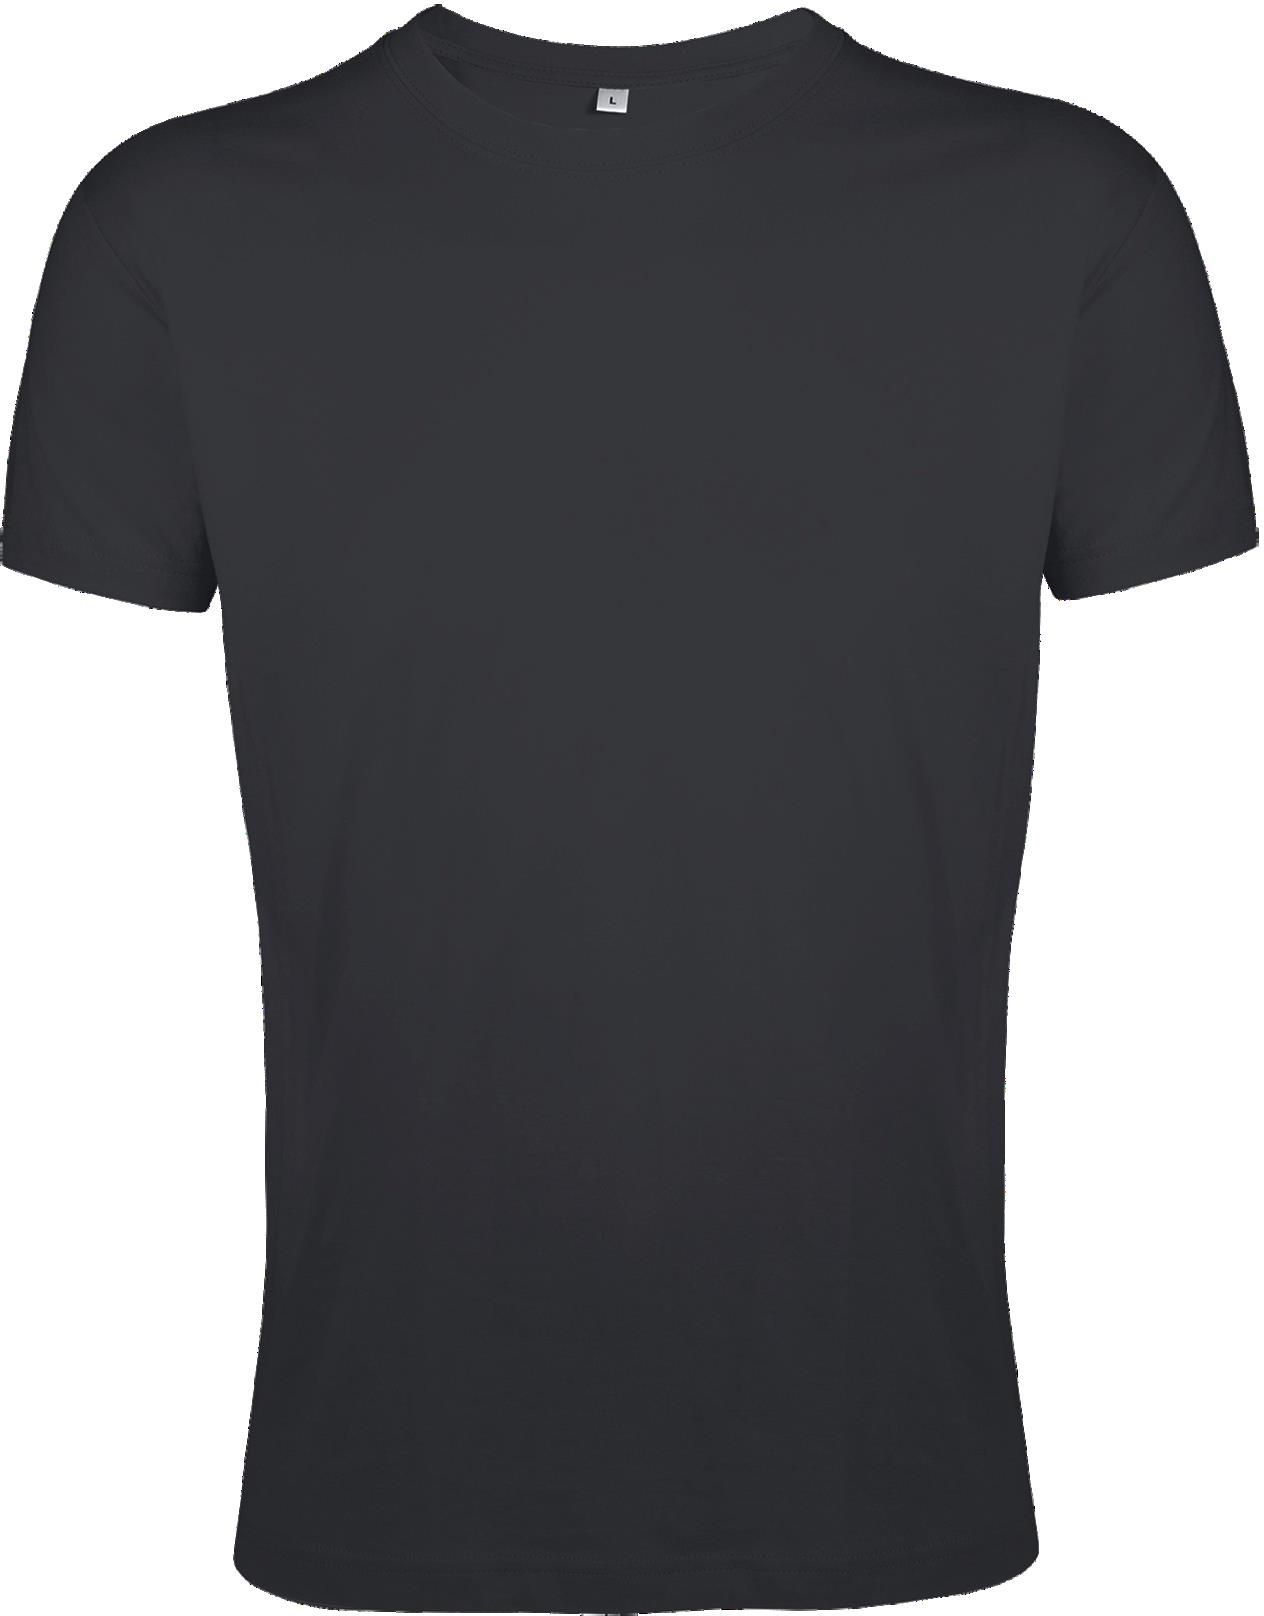 Ανδρικό T-shirt σε στενή γραμμή Regent Fit SOLS 00553 Dark Grey